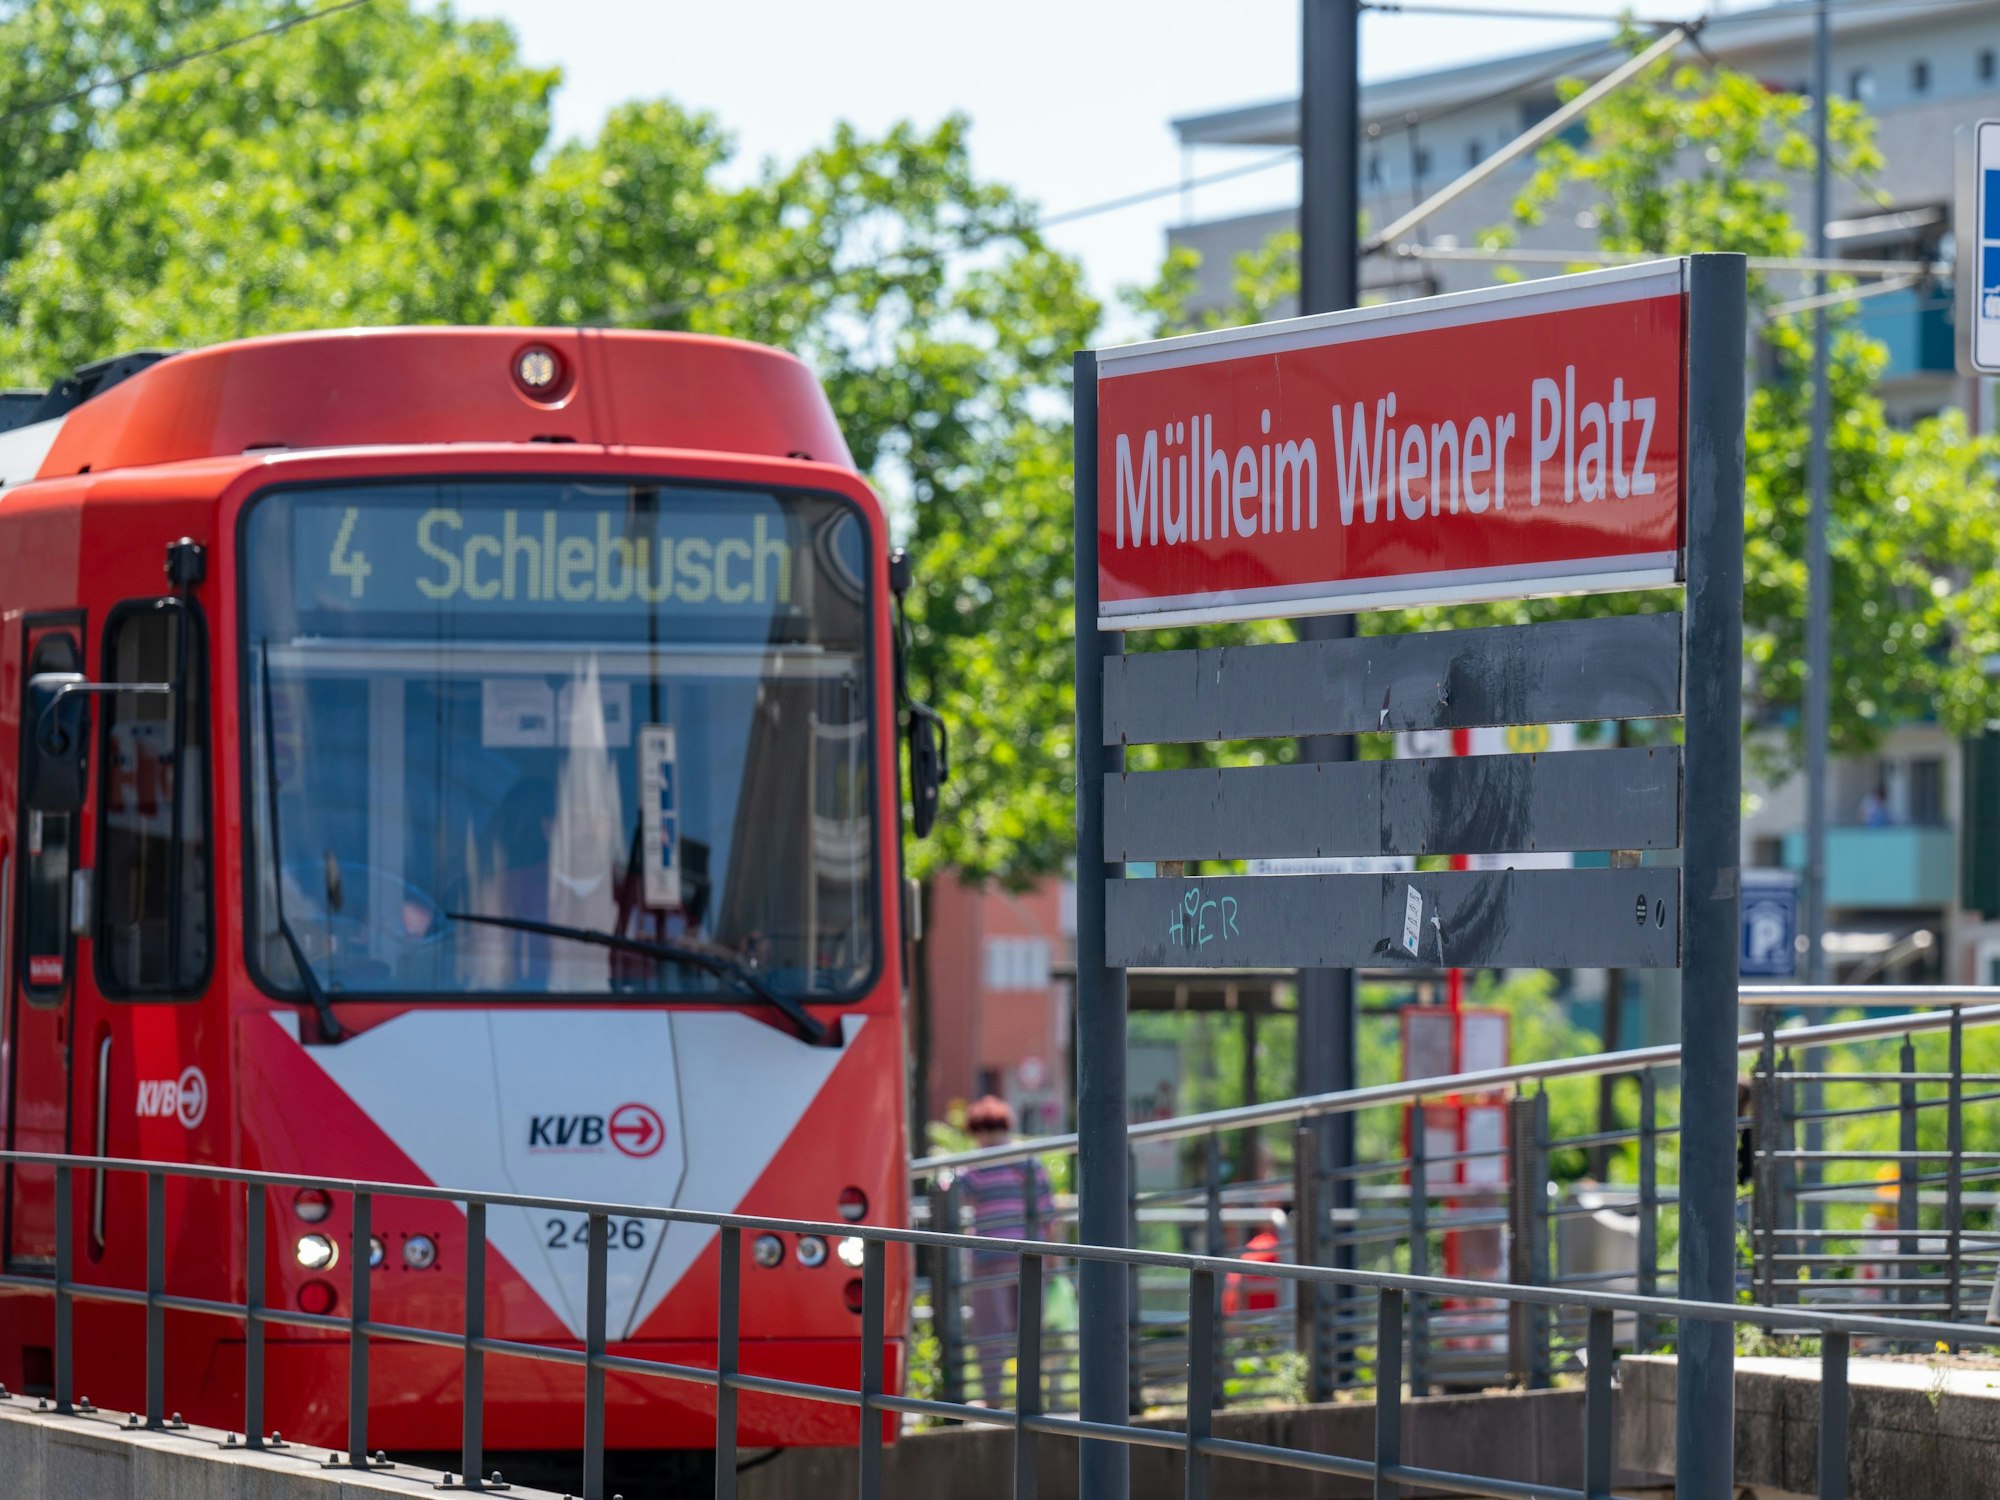 Die Stadtbahnlinie 4 in Fahrtrichtung Schlebusch steht an der Haltestelle Mülheim Wiener Platz.